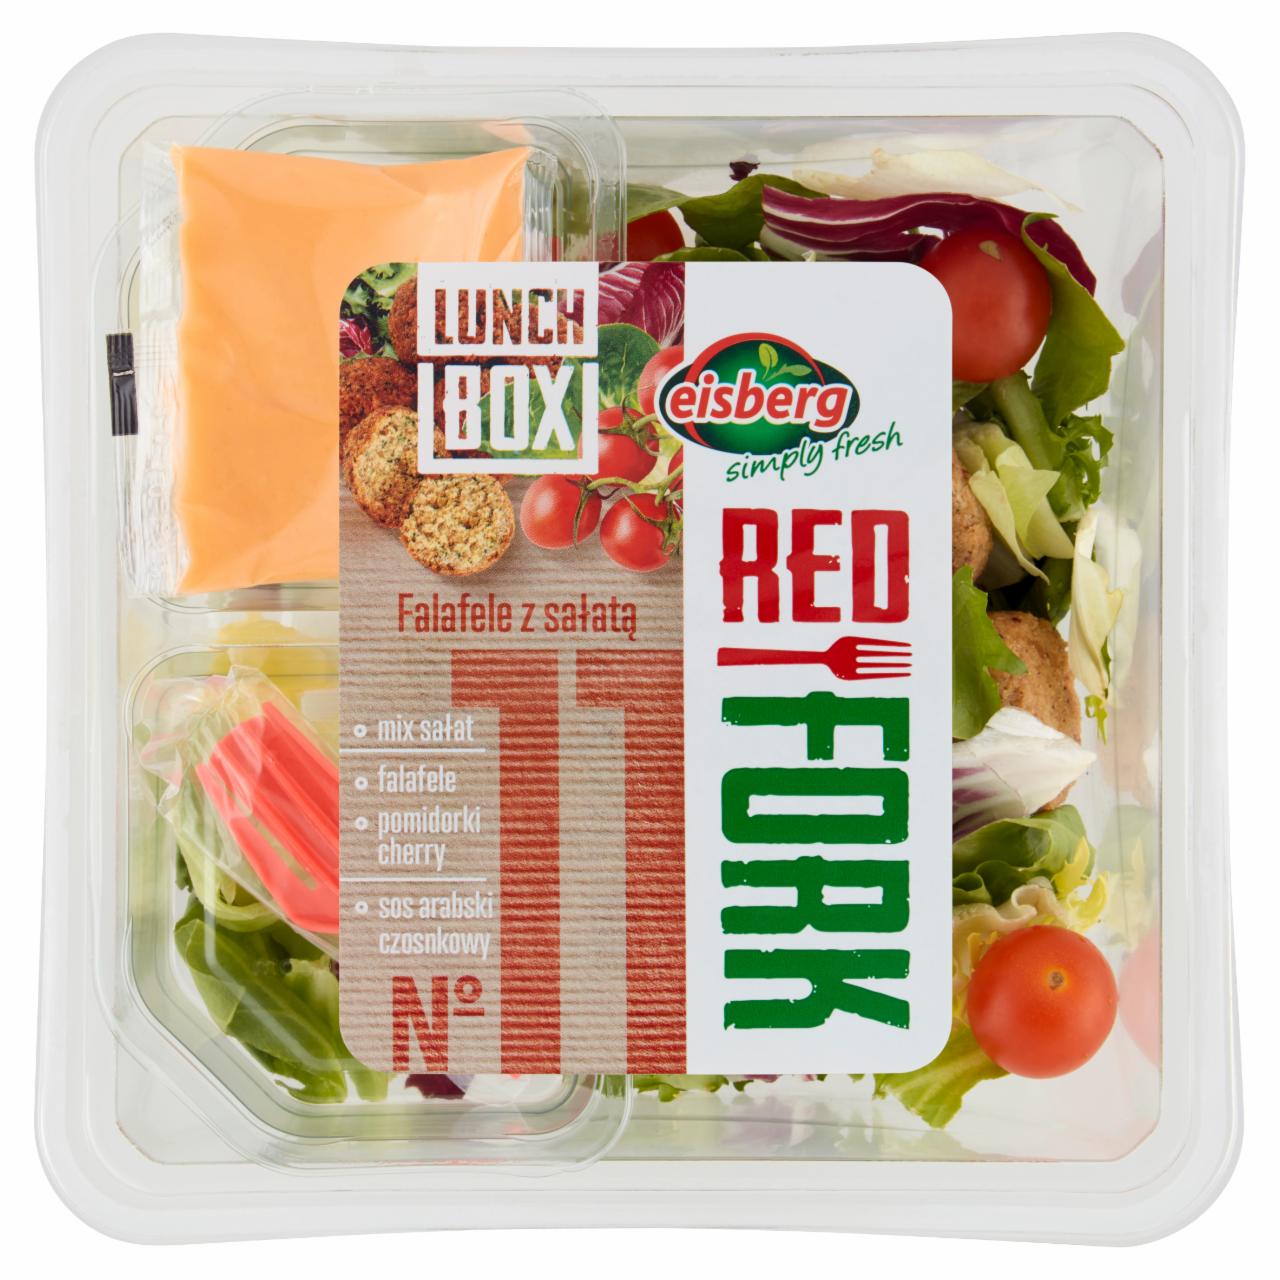 Zdjęcia - Eisberg Red Fork Lunch Box No 11 Falafele z sałatą140 g